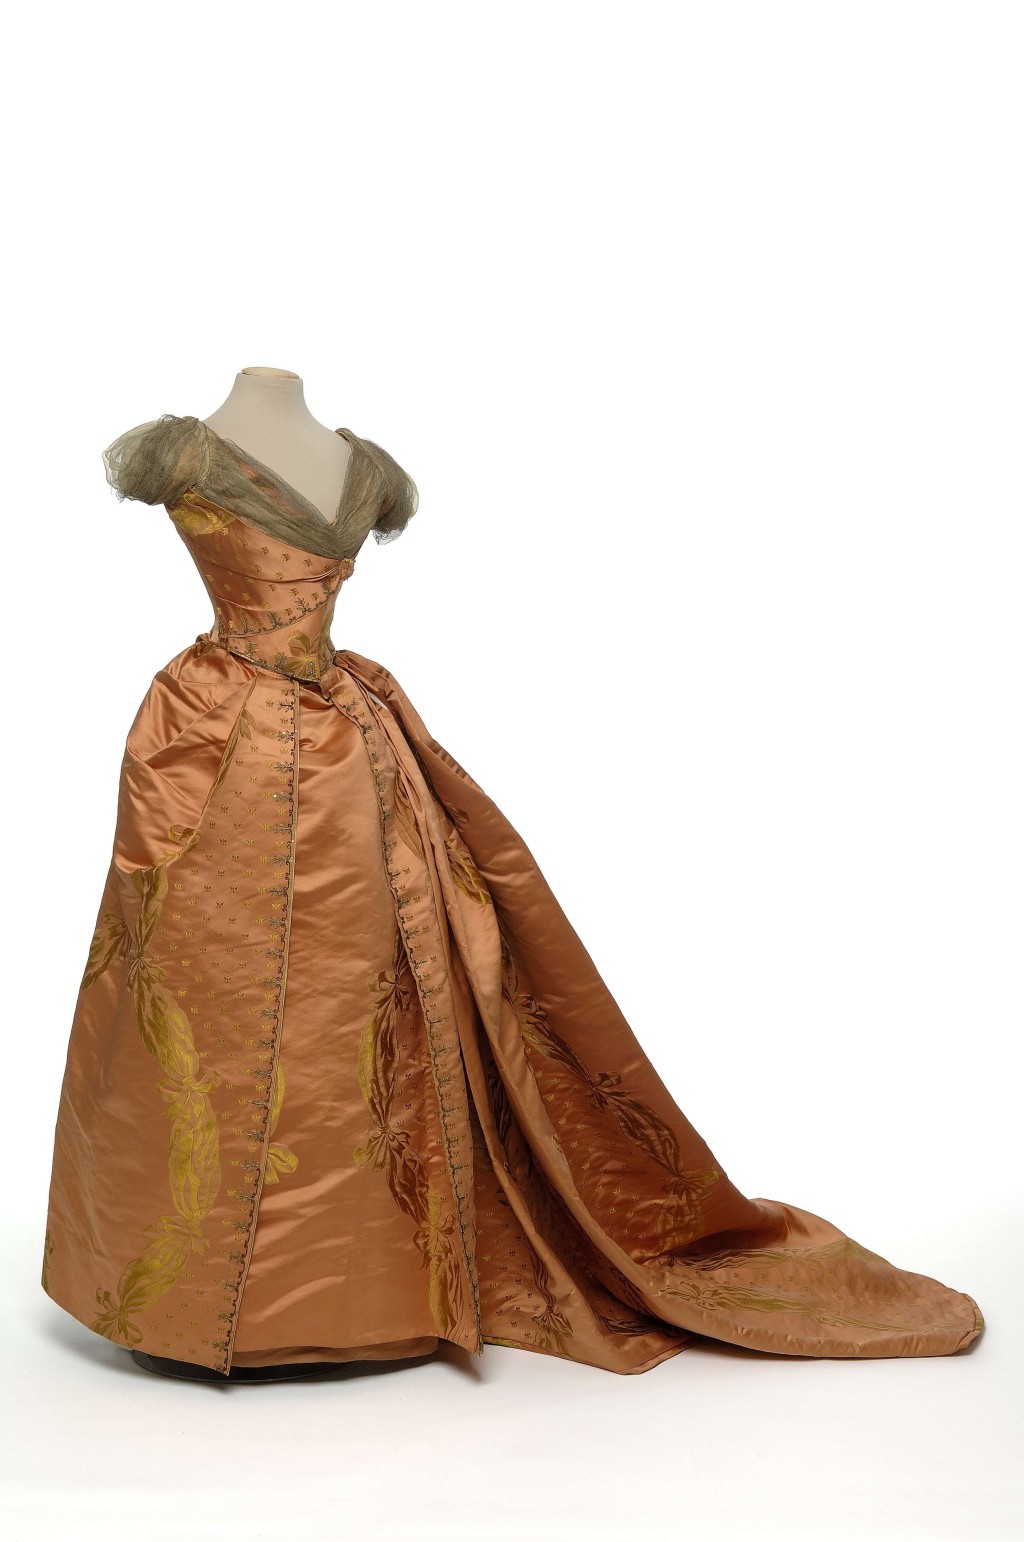 出自「高级订制服装之父」查尔斯．弗雷德里克．沃斯之手的橘色长裙。© 巴黎装饰 艺术博物馆 / 摄影:尚 · 托朗斯